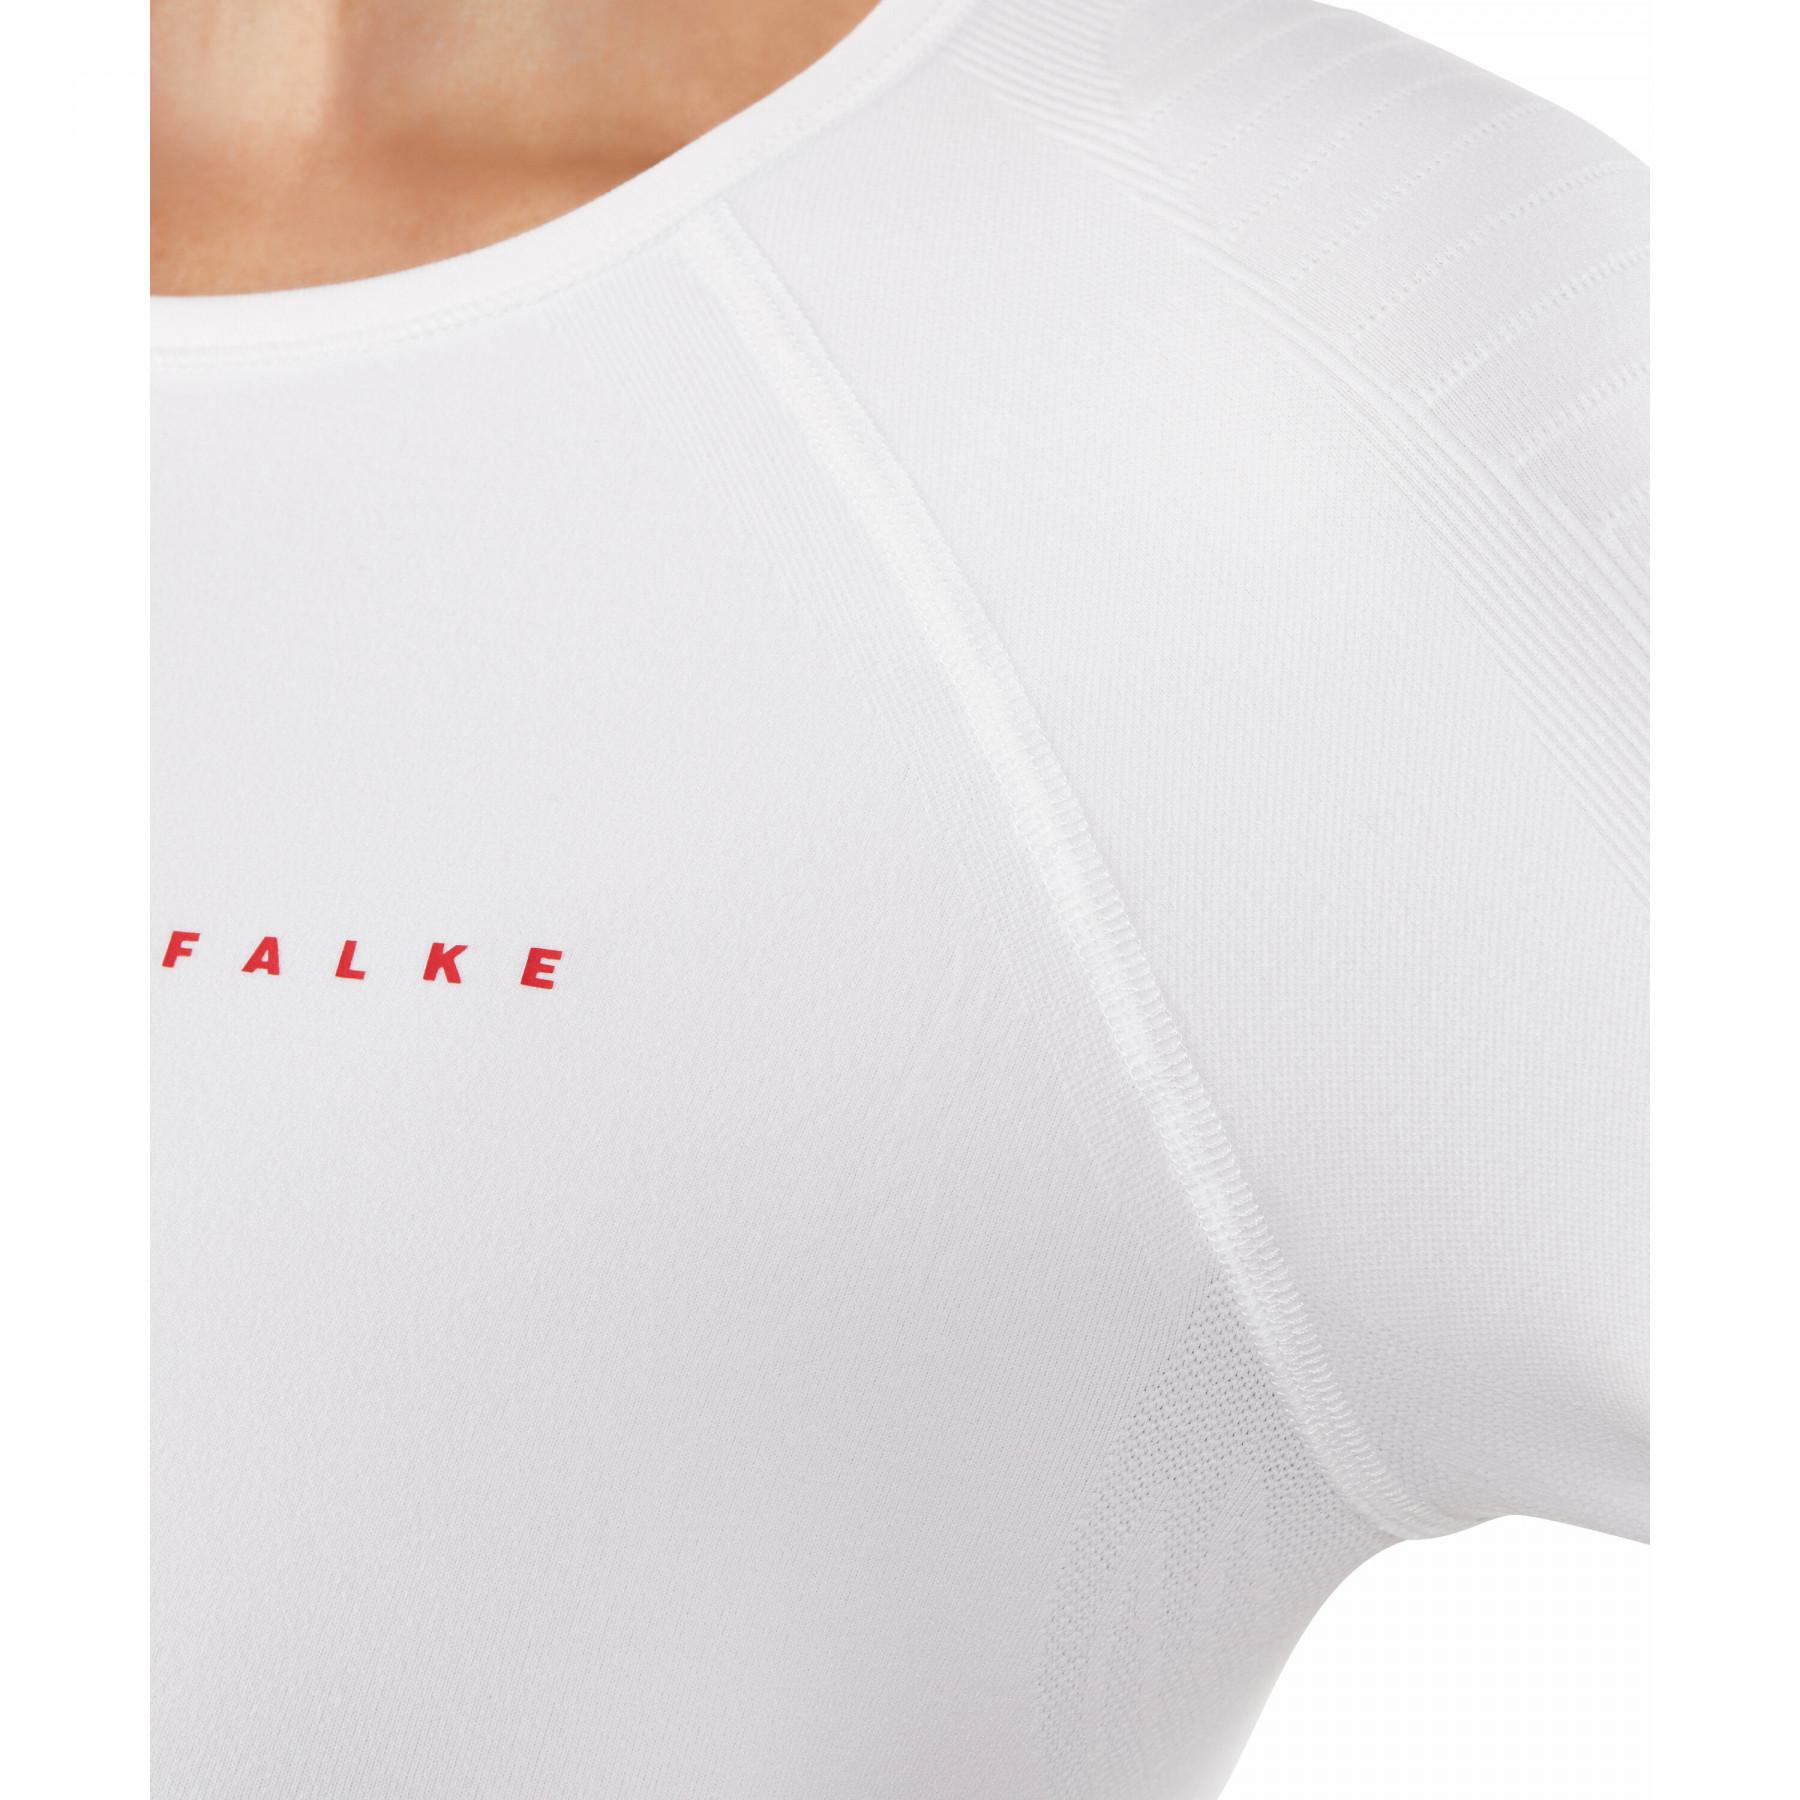 Camiseta mangas largas mujer Falke Maximum Warm